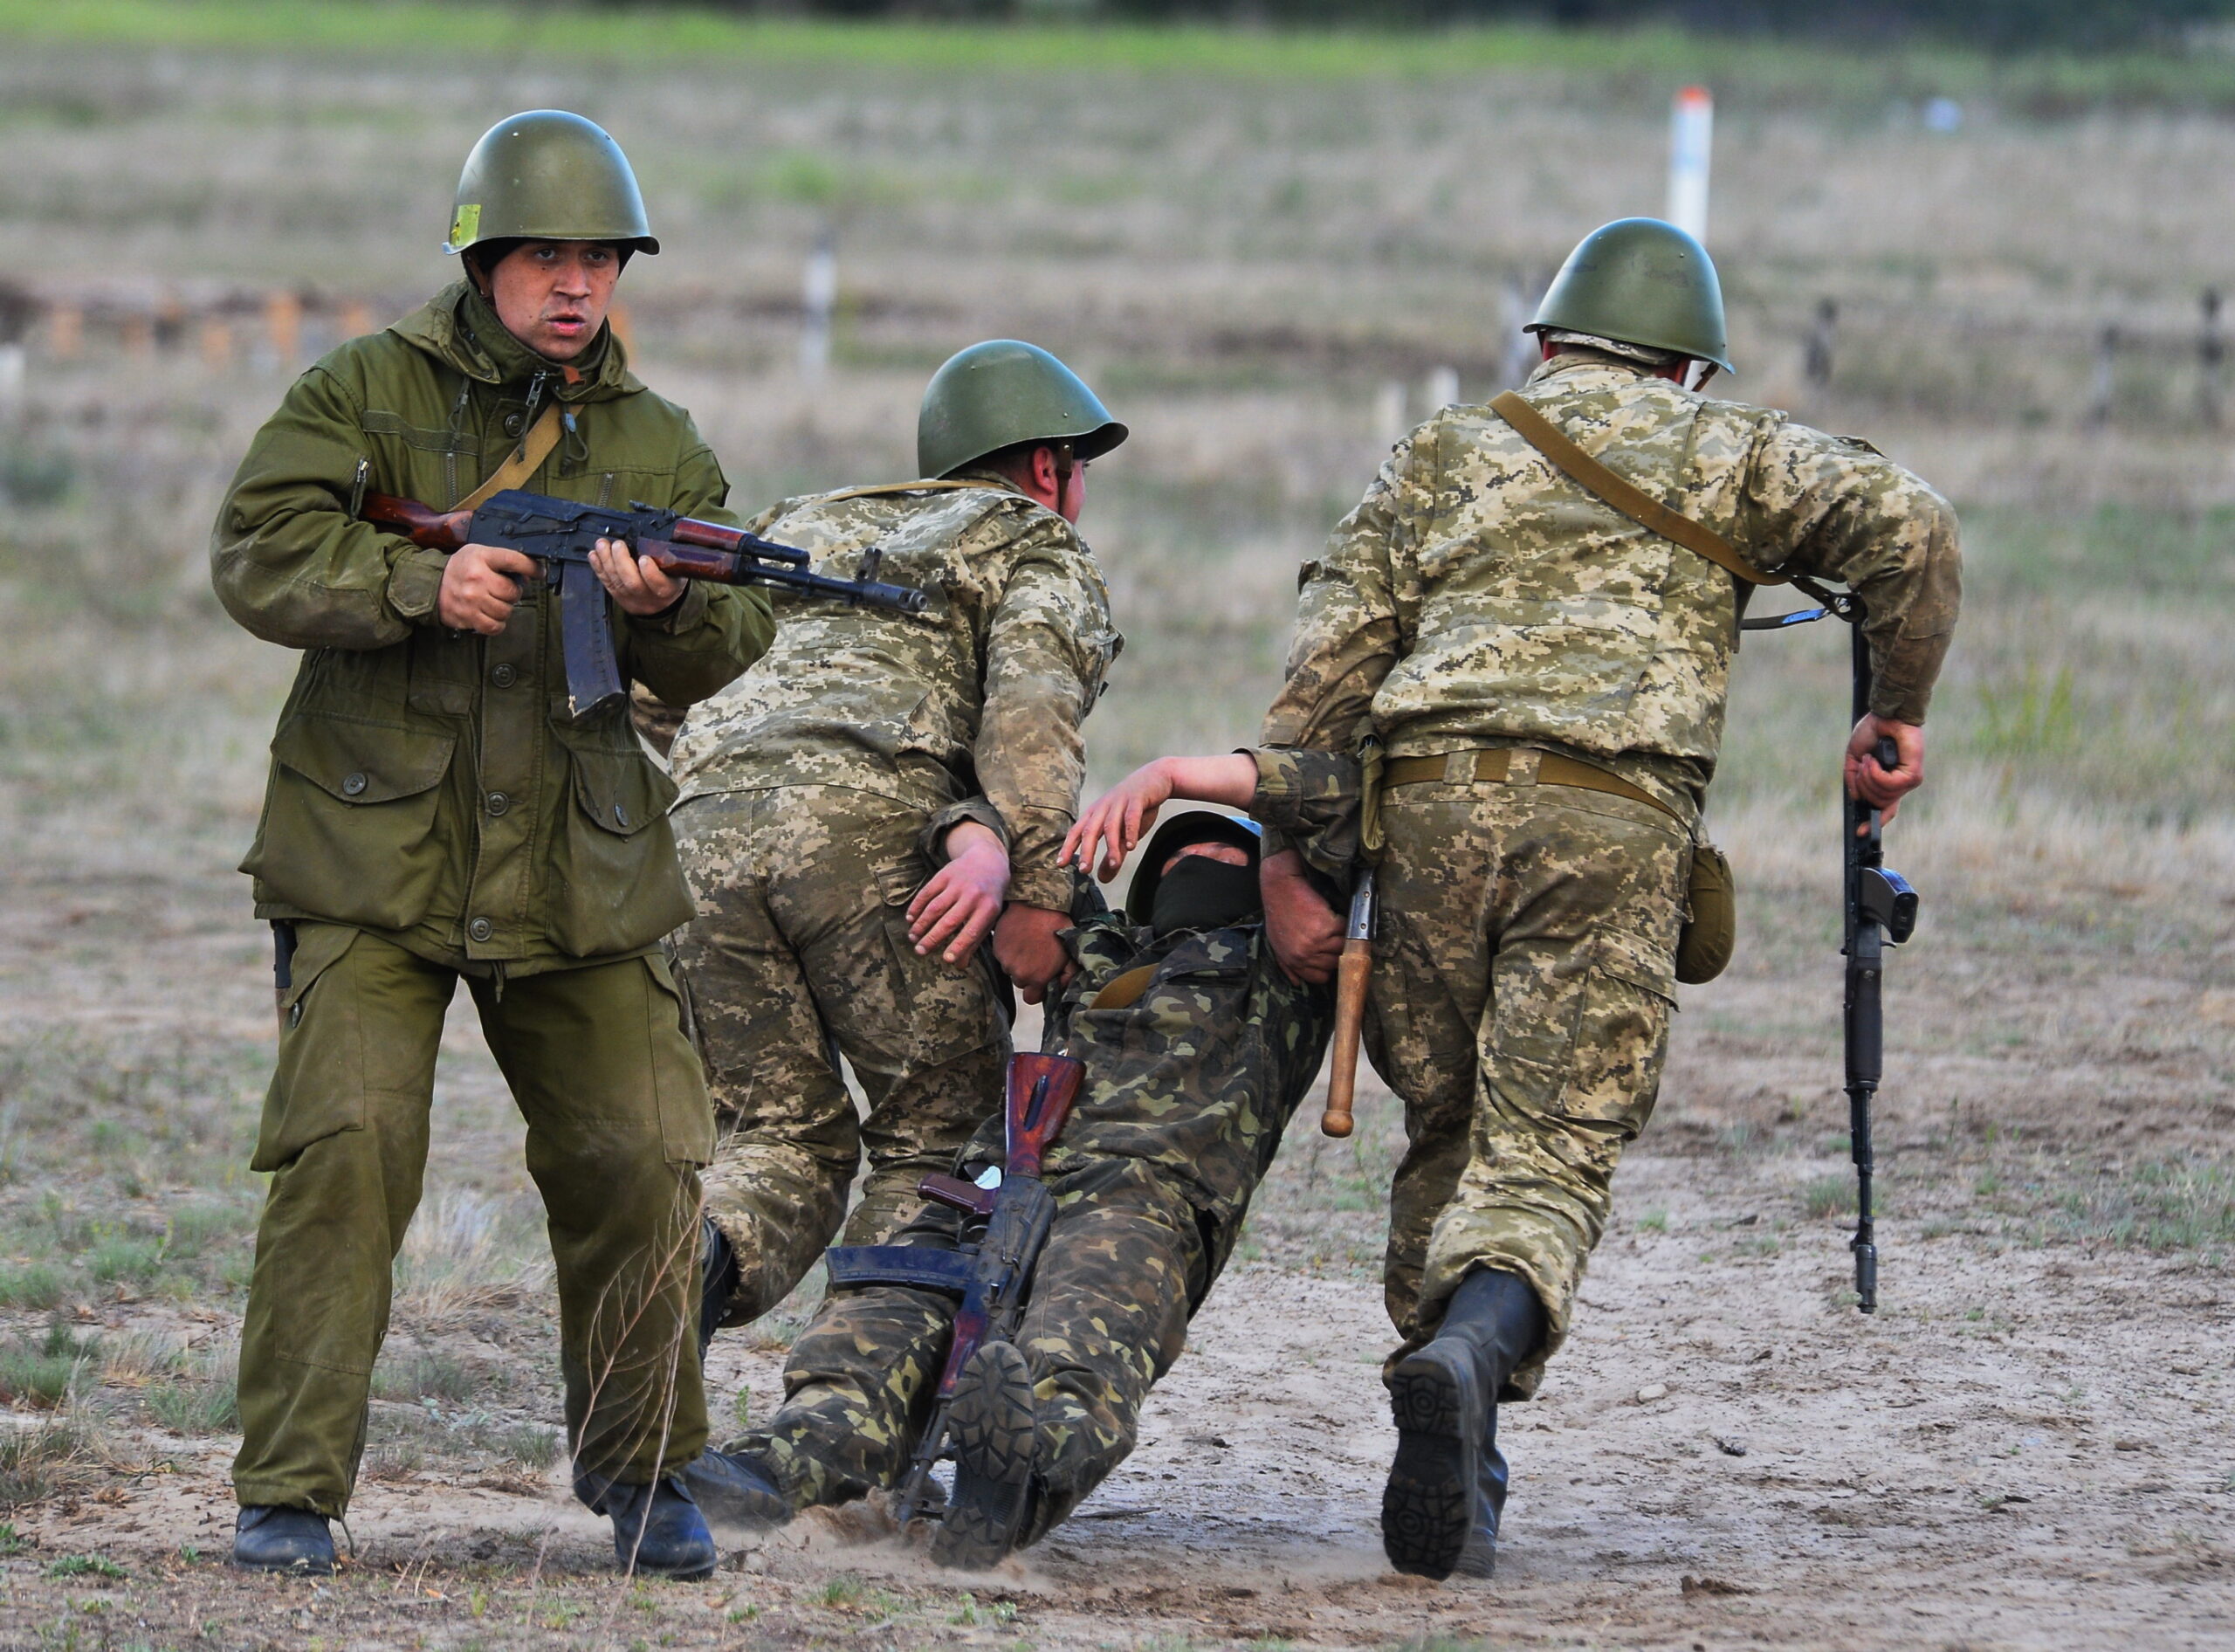 В украинской разведке озвучили «потери российских войск на Донбассе в 2020 году»